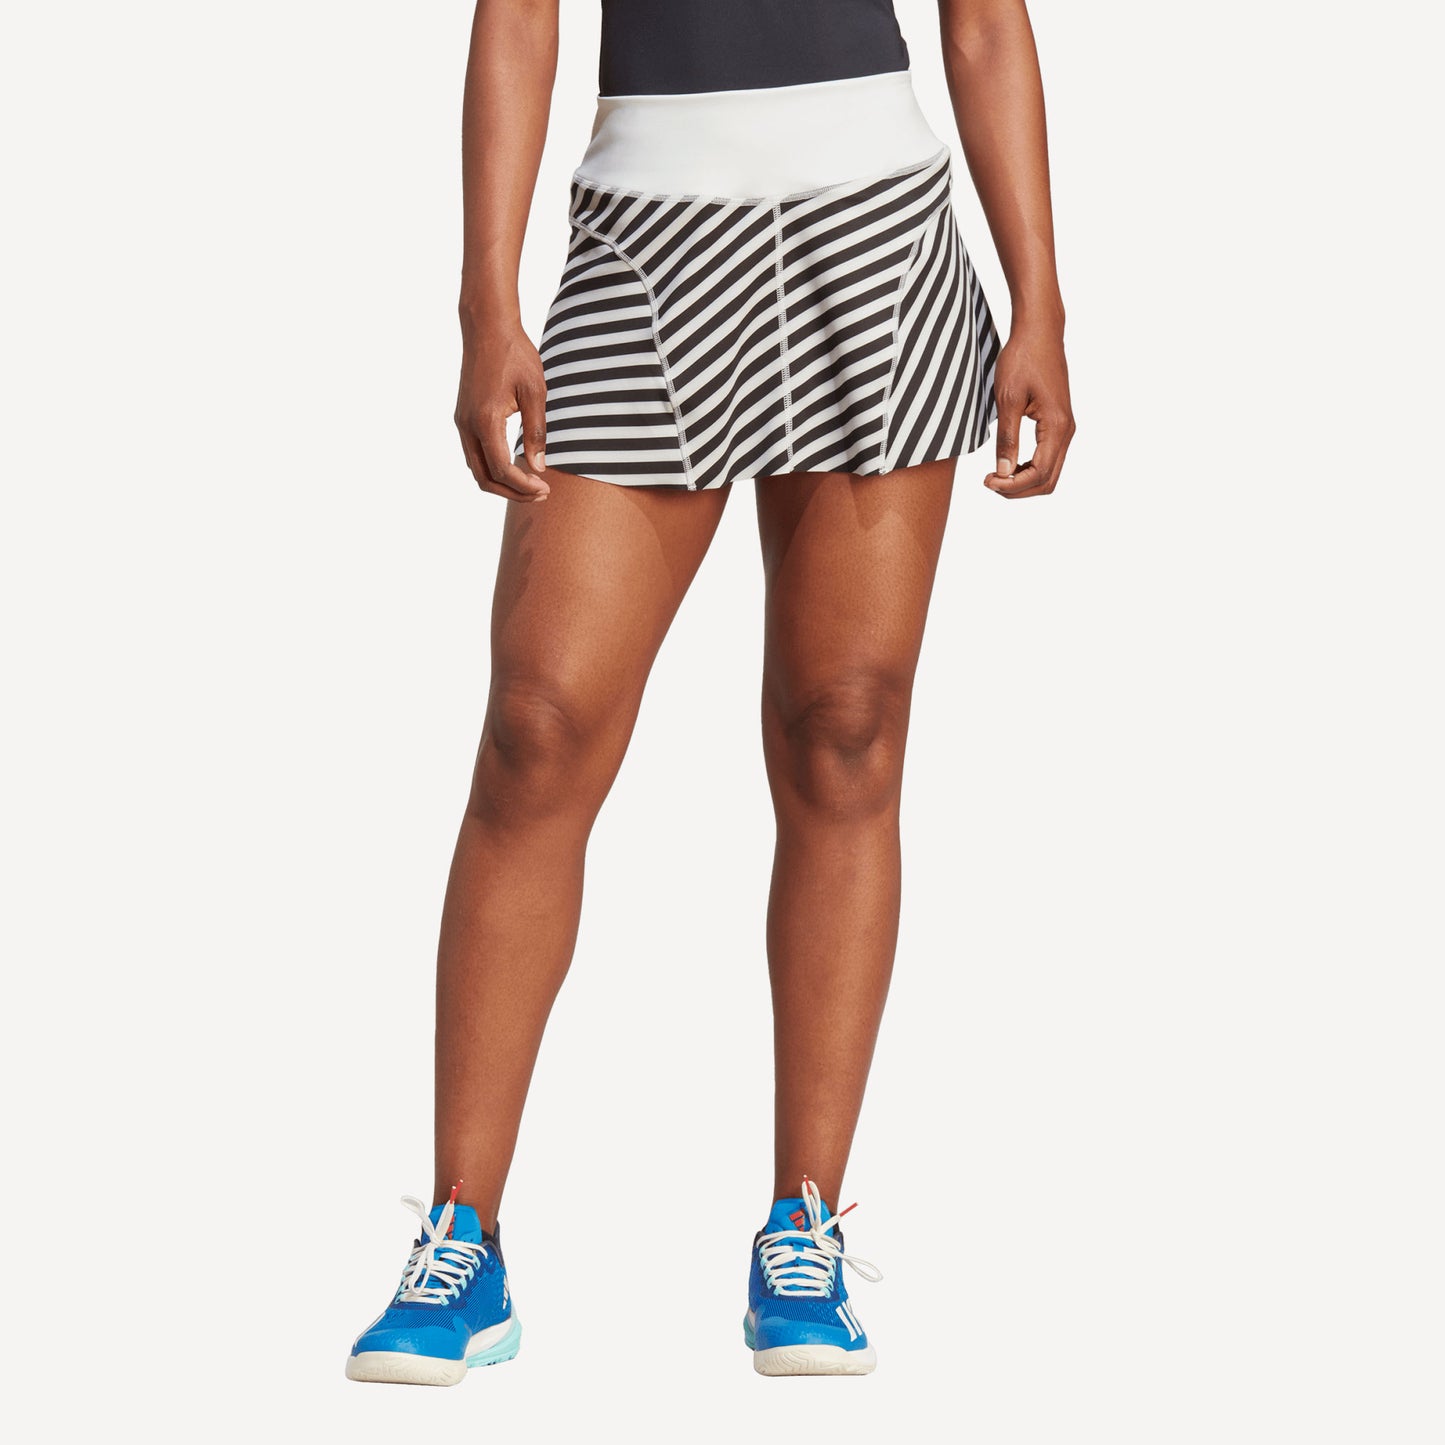 adidas New York Pro Match Women's Tennis Skirt Grey (1)